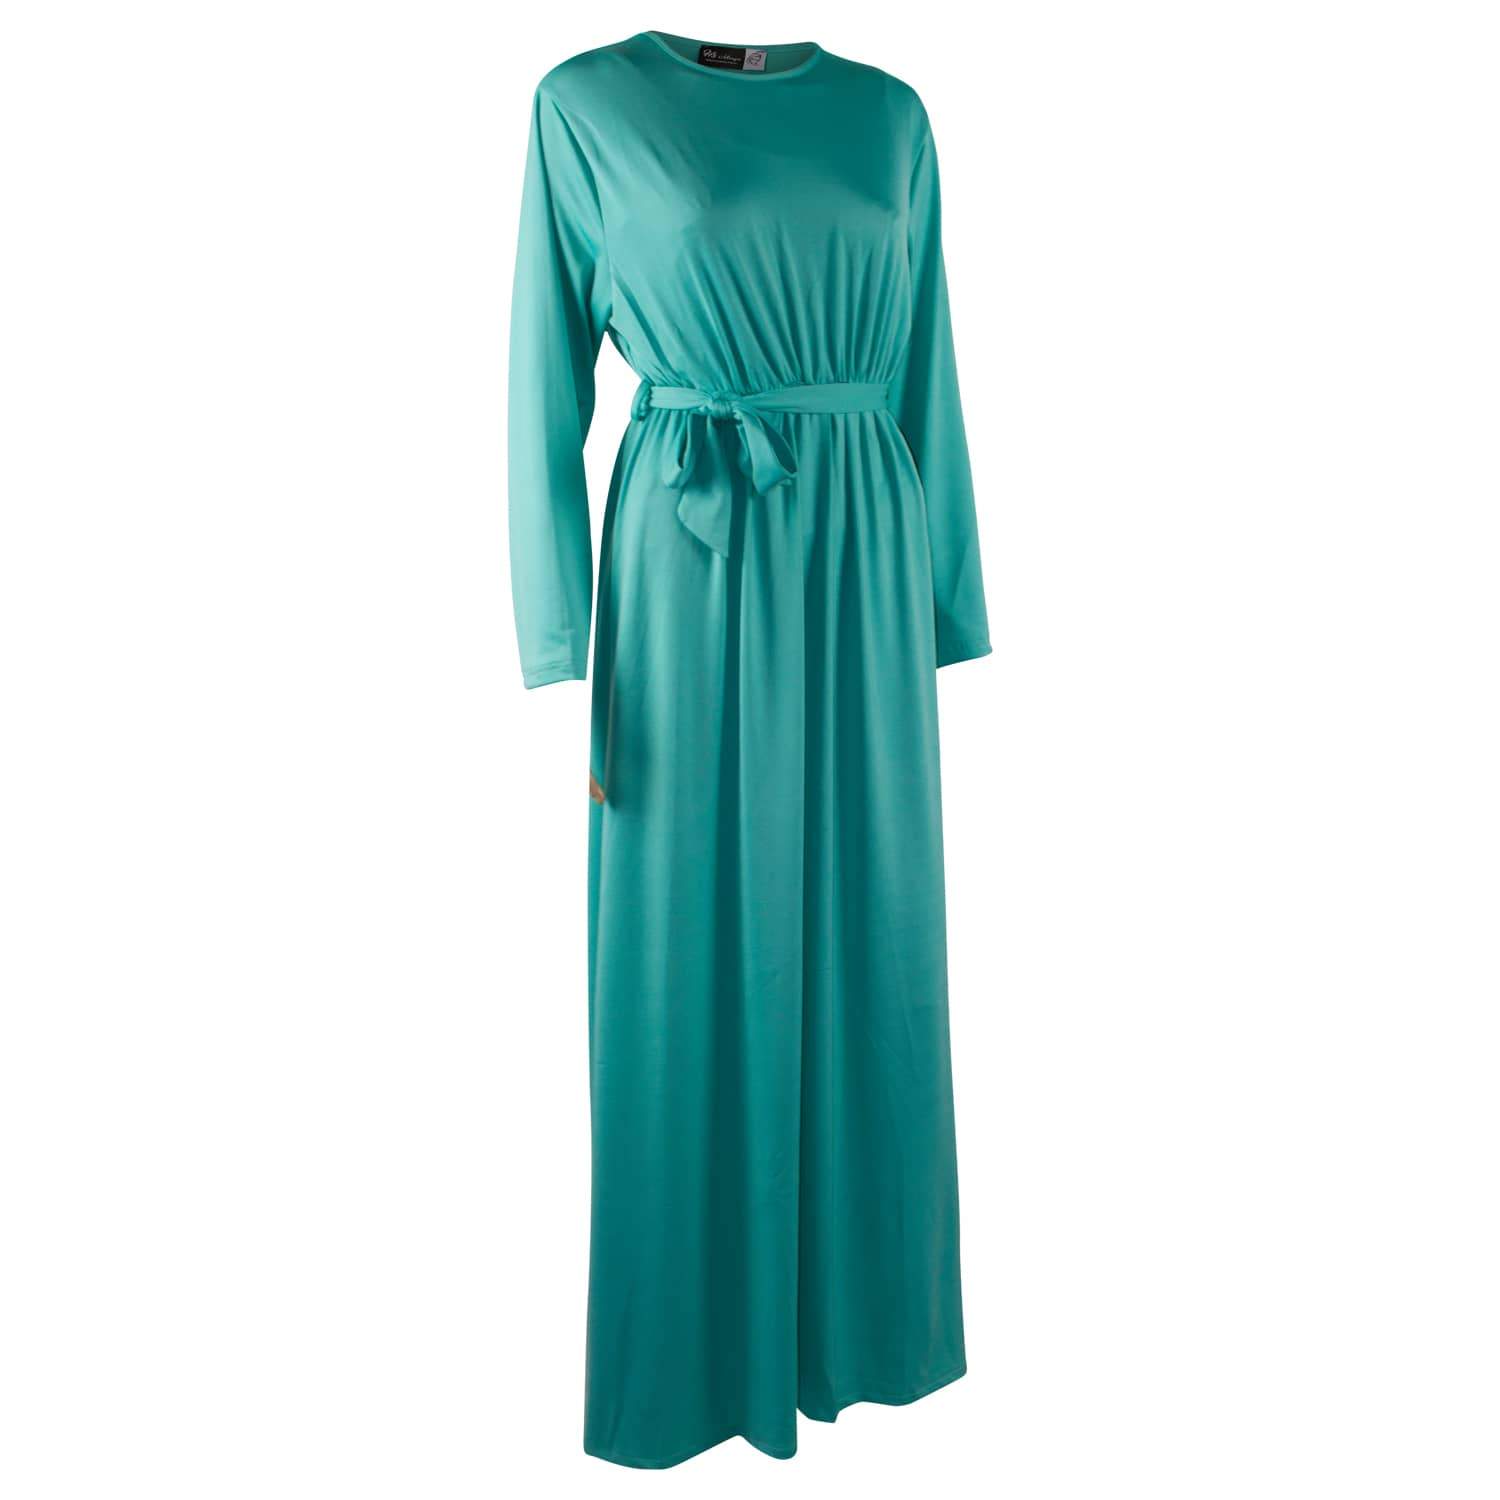 Turquoise x Plain Abaya | Modestique